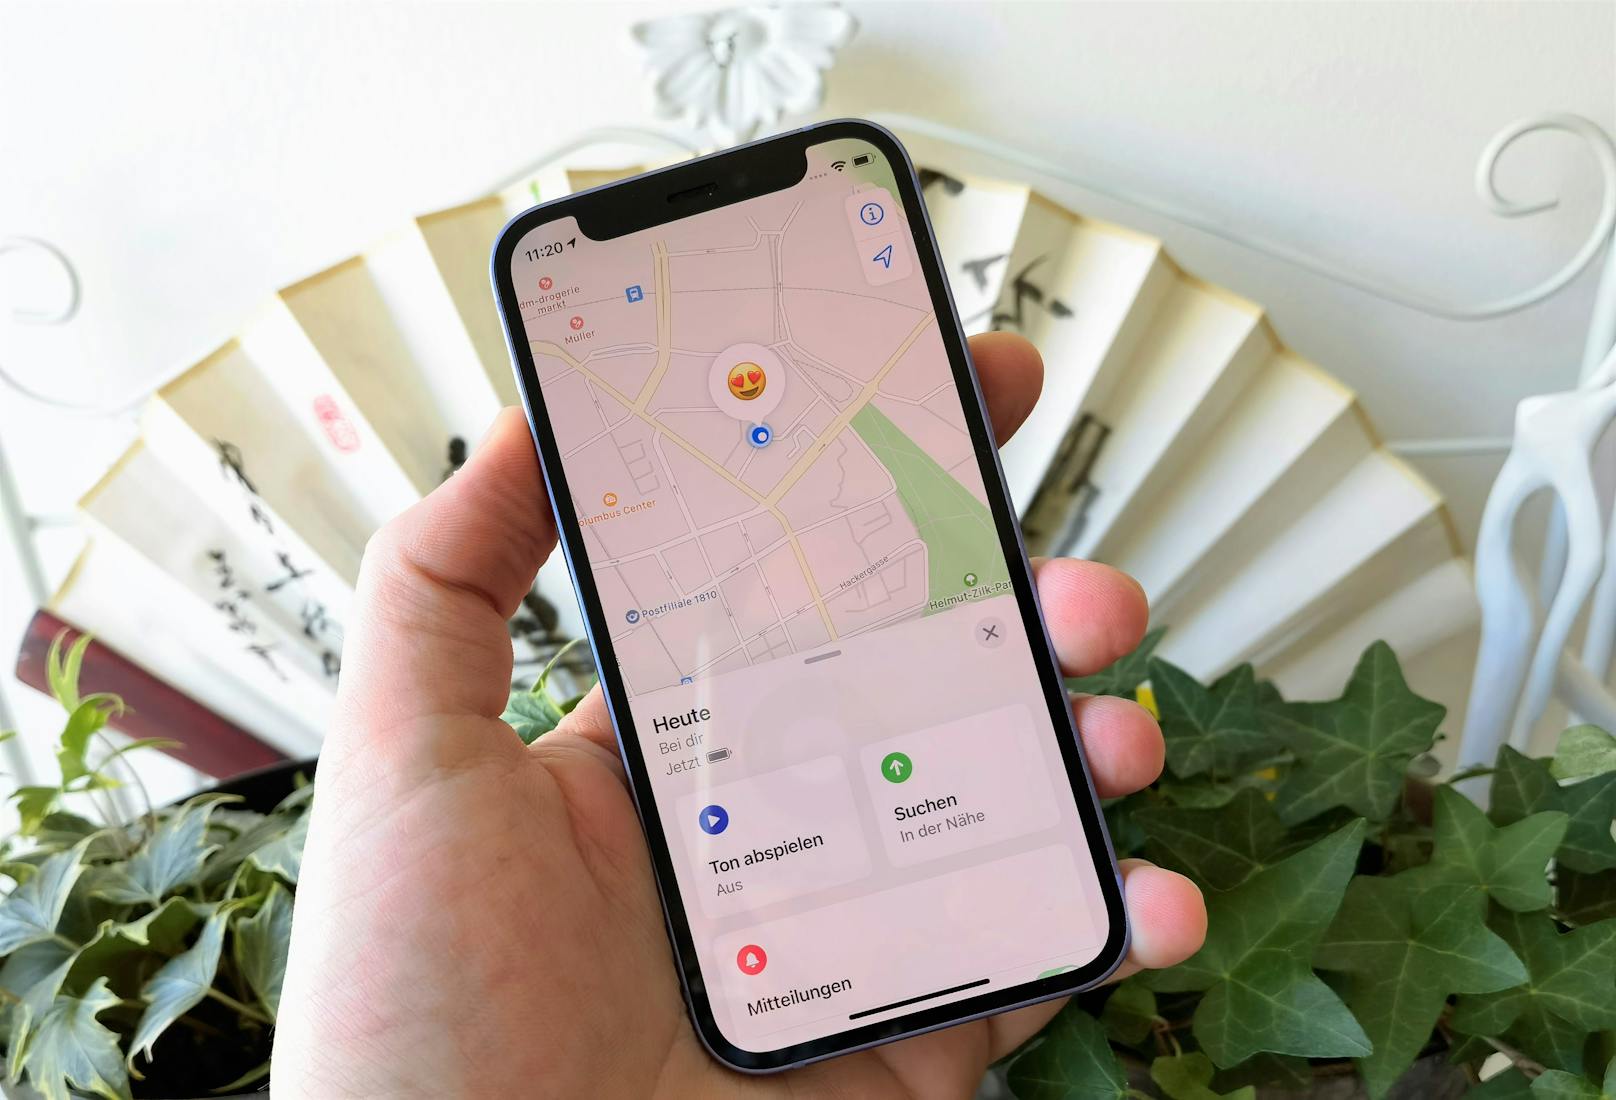 Der AirTag kann auf Wunsch am iPhone mit einem vorgegeben ("Schlüssel", "Jacke" und Co.) oder personalisiertem Namen und einem Emoji versehen werden. Über die "Wo ist?"-App wird dann der genaue Standort des AirTags auf einer Karte angezeigt.